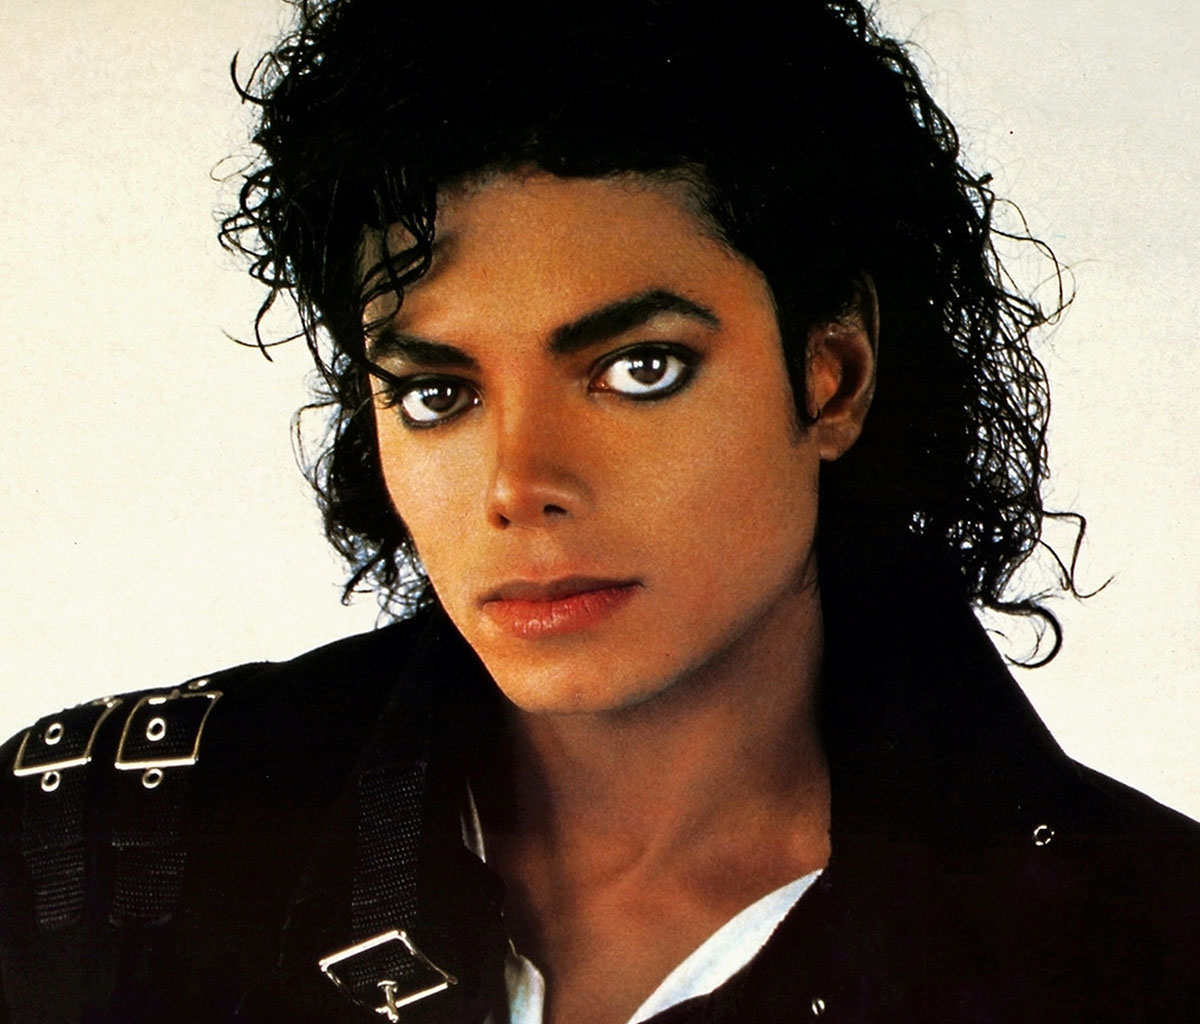 L'idole de millions de personnes, Michael Jackson